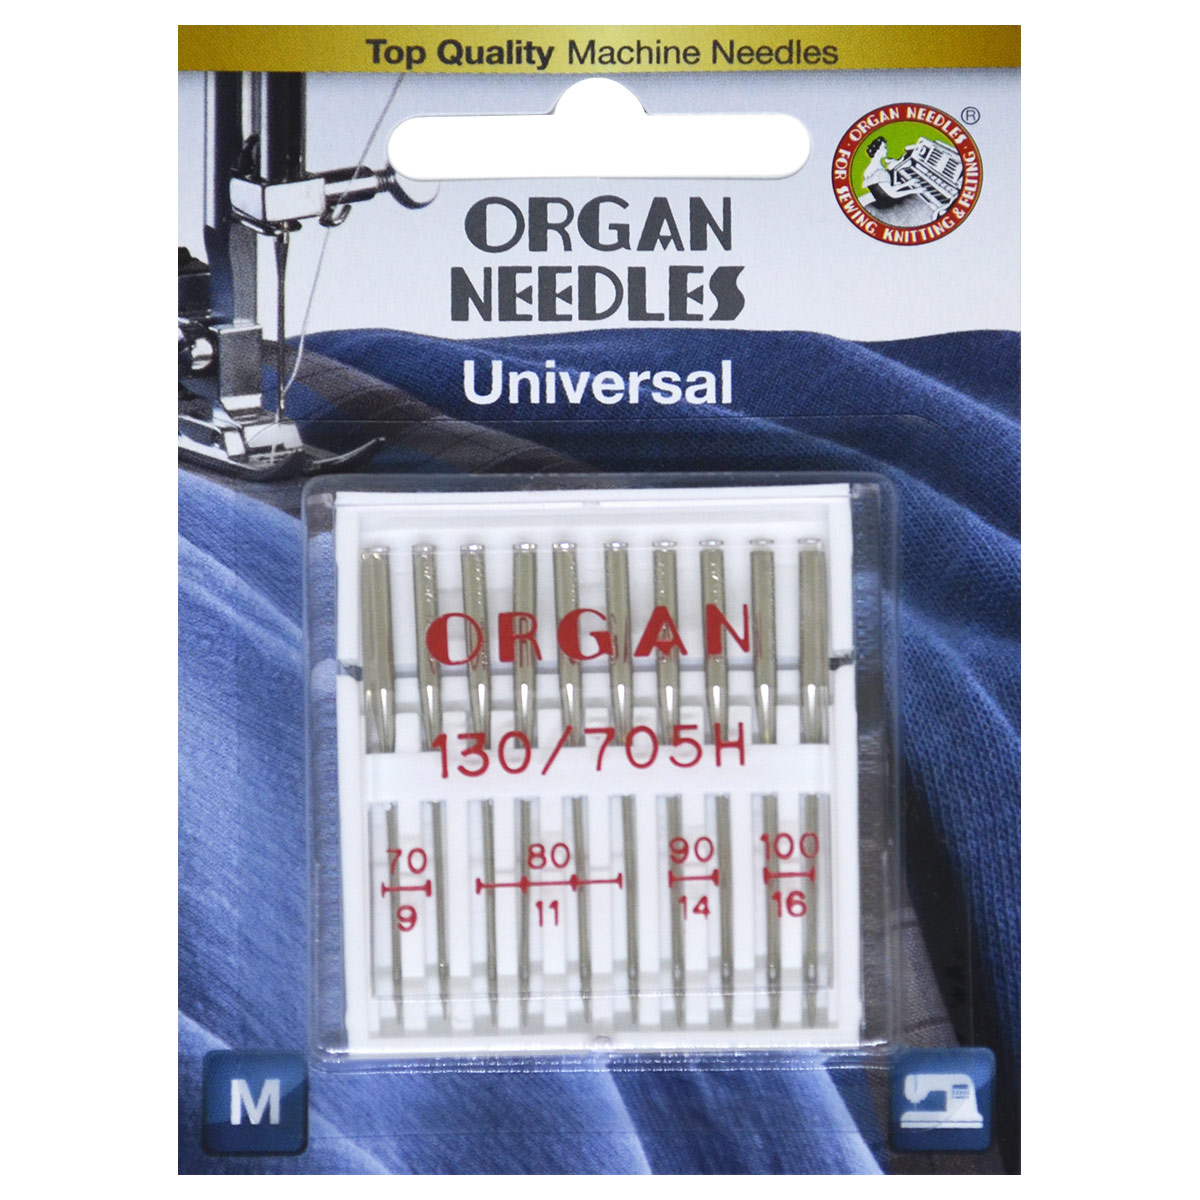 Иглы Organ универсальные 10/70-100 Blister иглы для бытовых швейных машин универсальные gamma